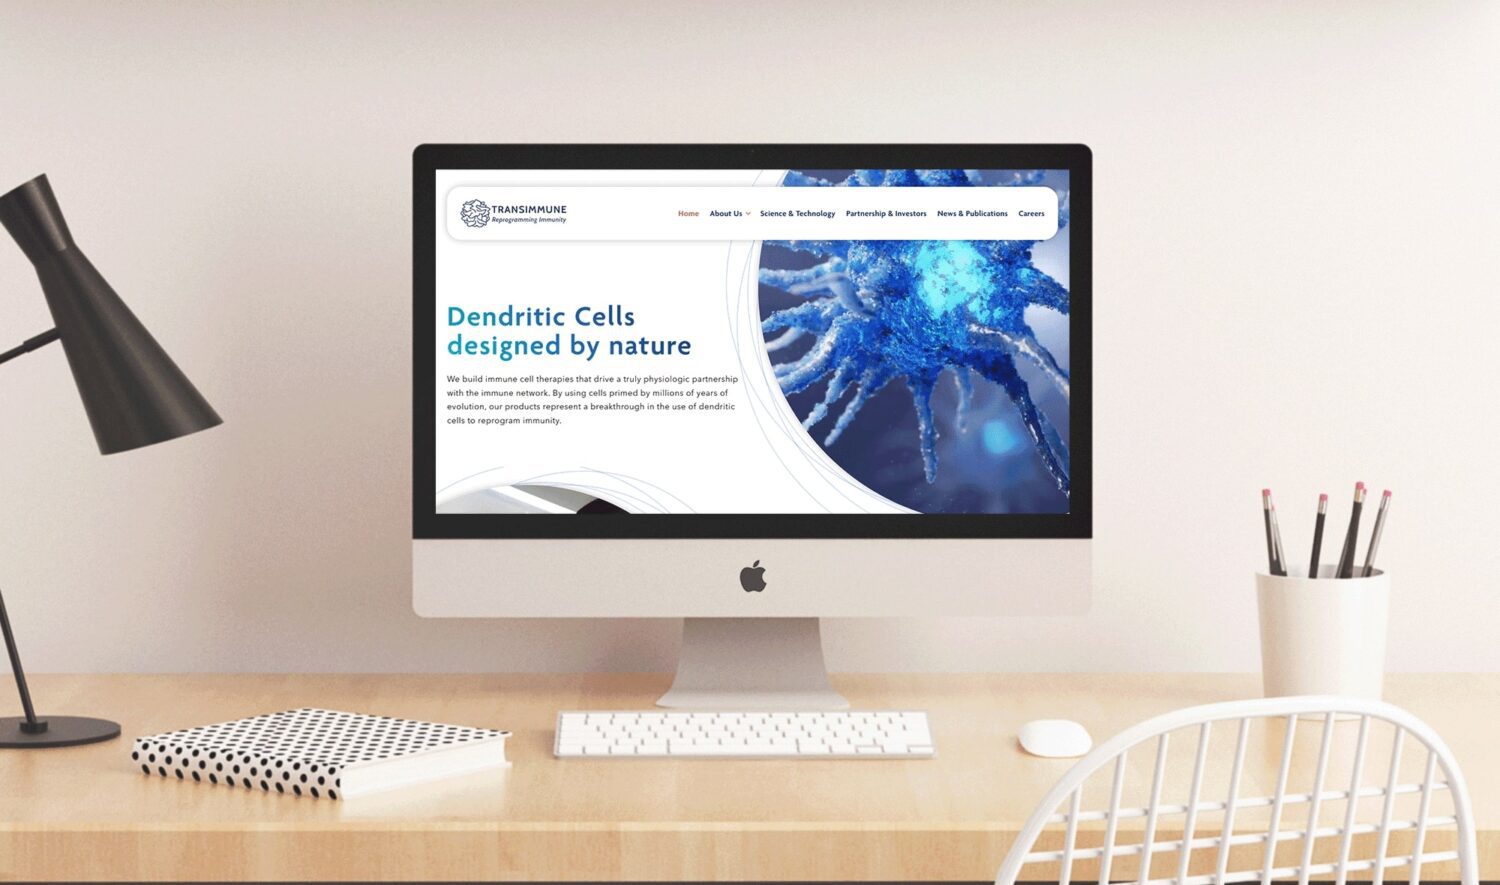 Life Sciences Website Design - Transimmune case study